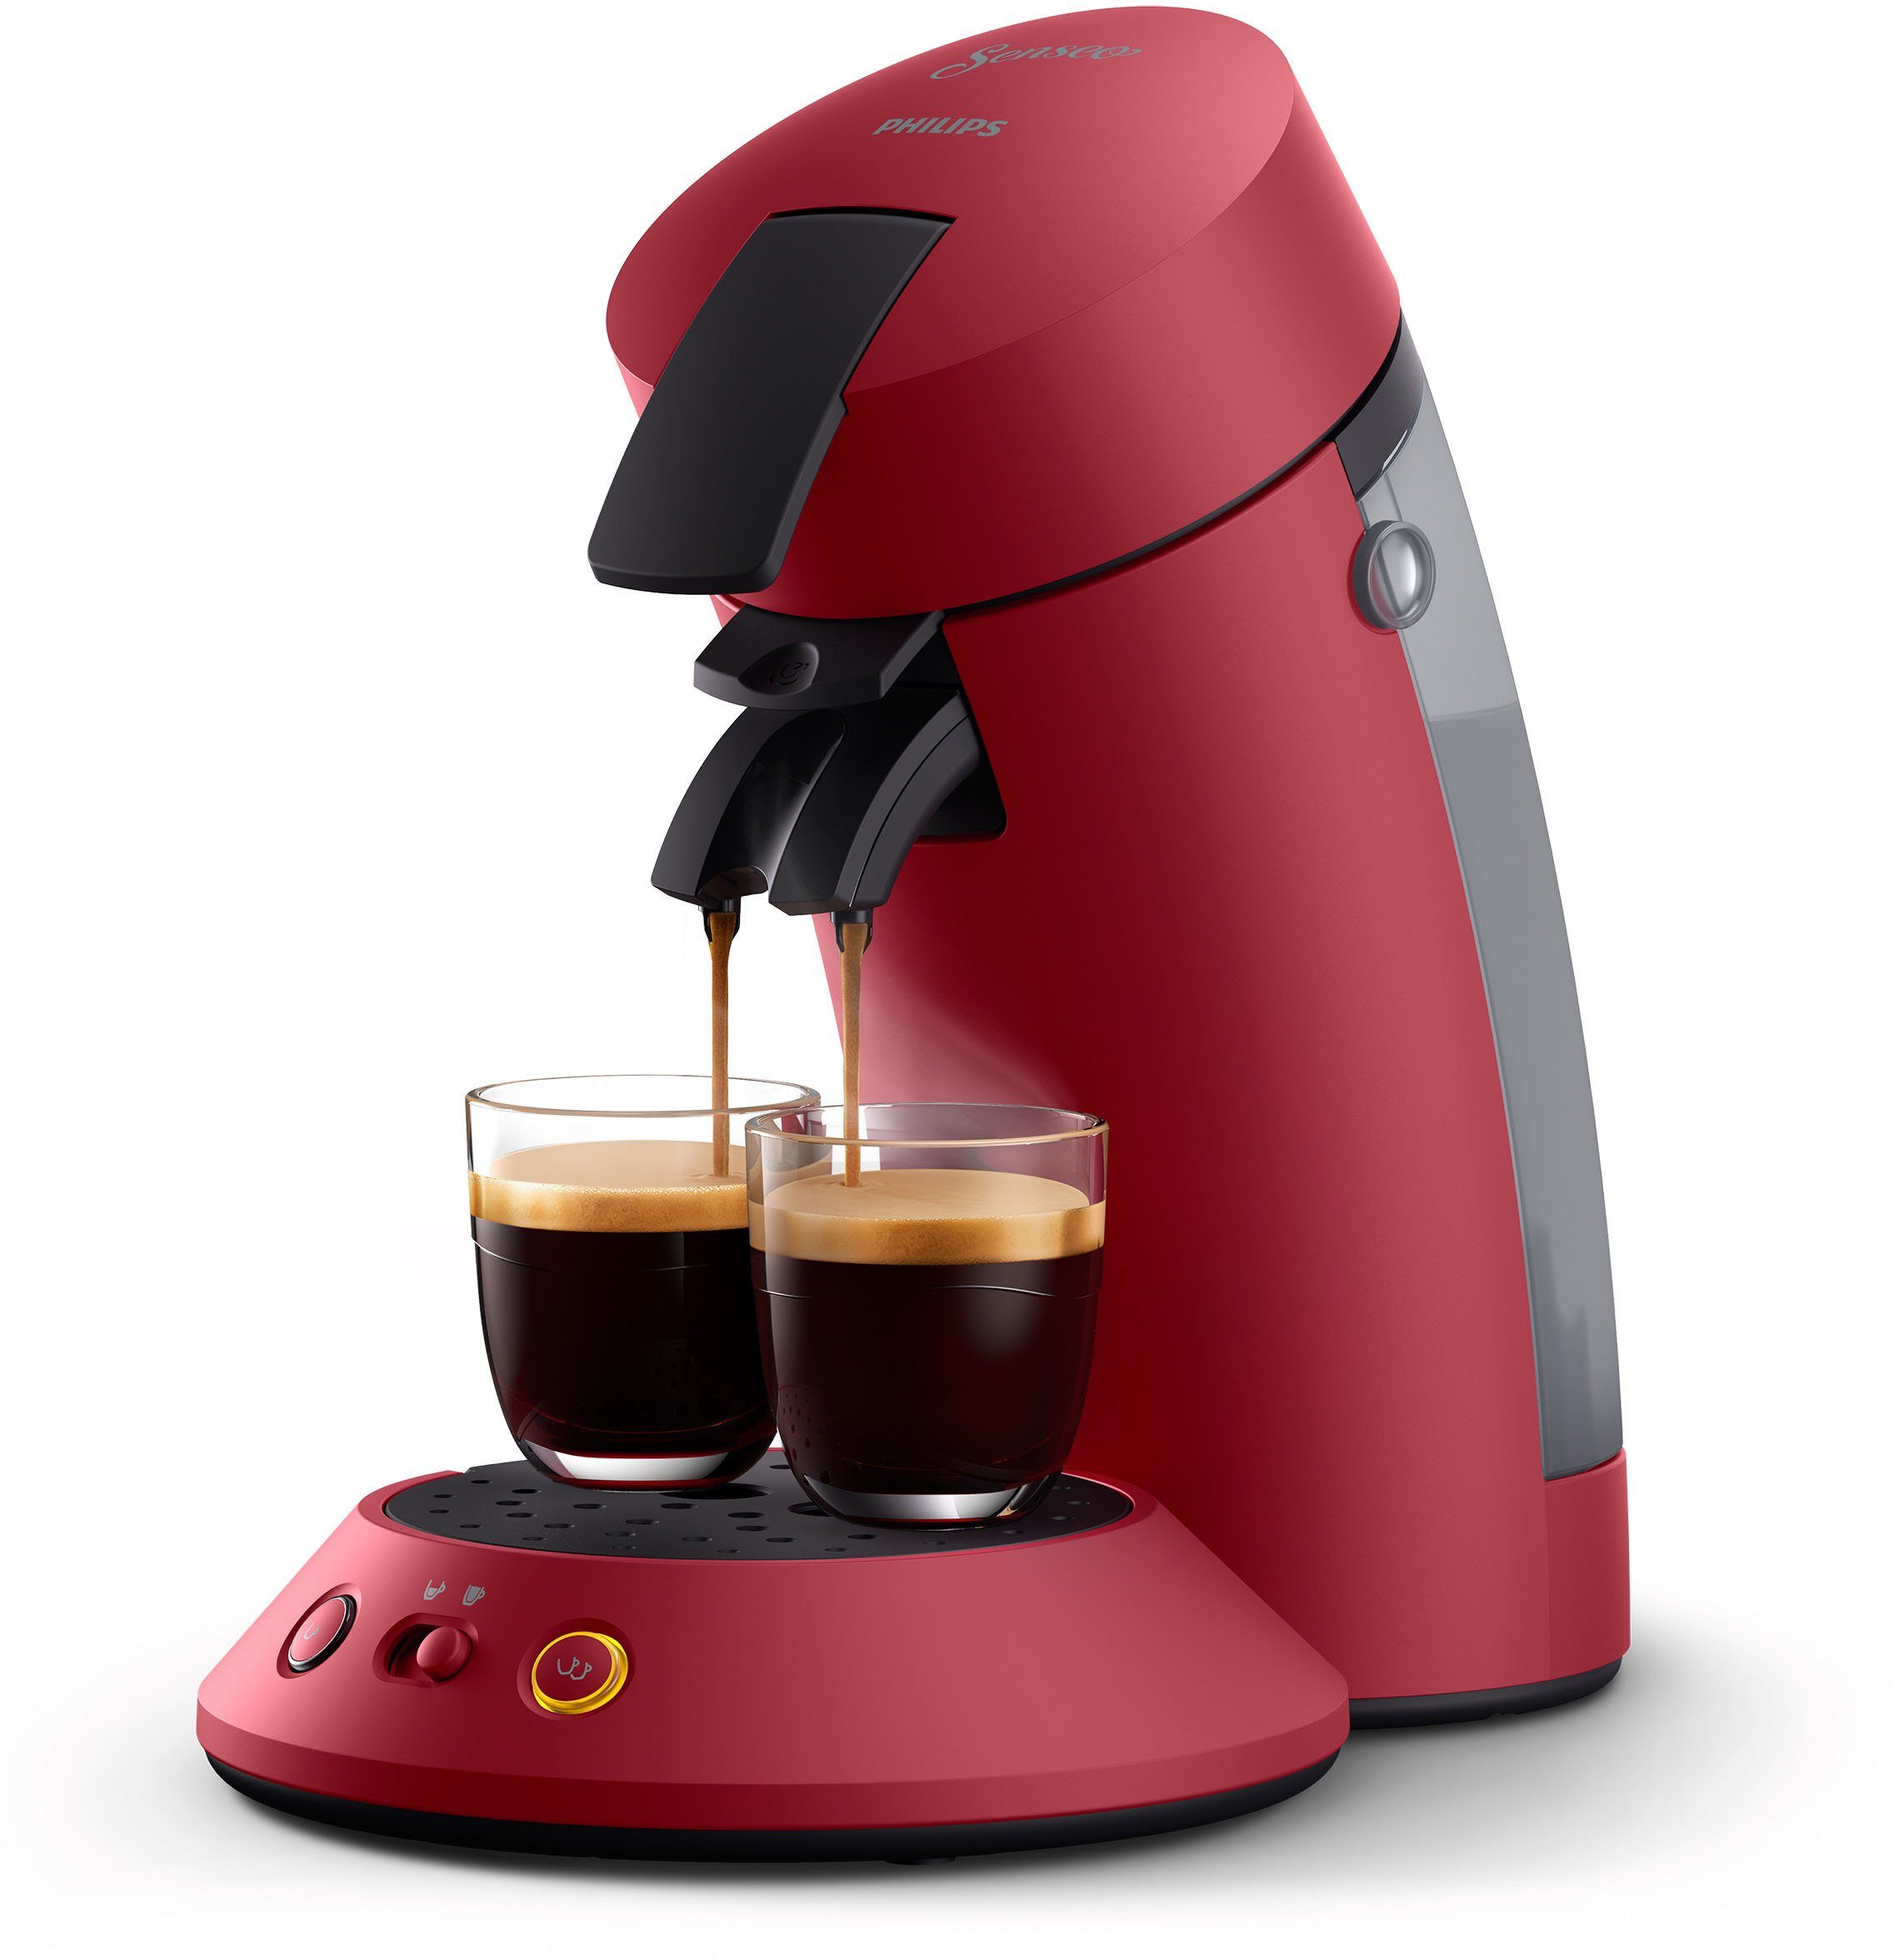 senseo koffiepadautomaat orginal plus csa210-90, van 28% gerecycled plastic en met 2 koffiespecialiteiten, donkerrood rood